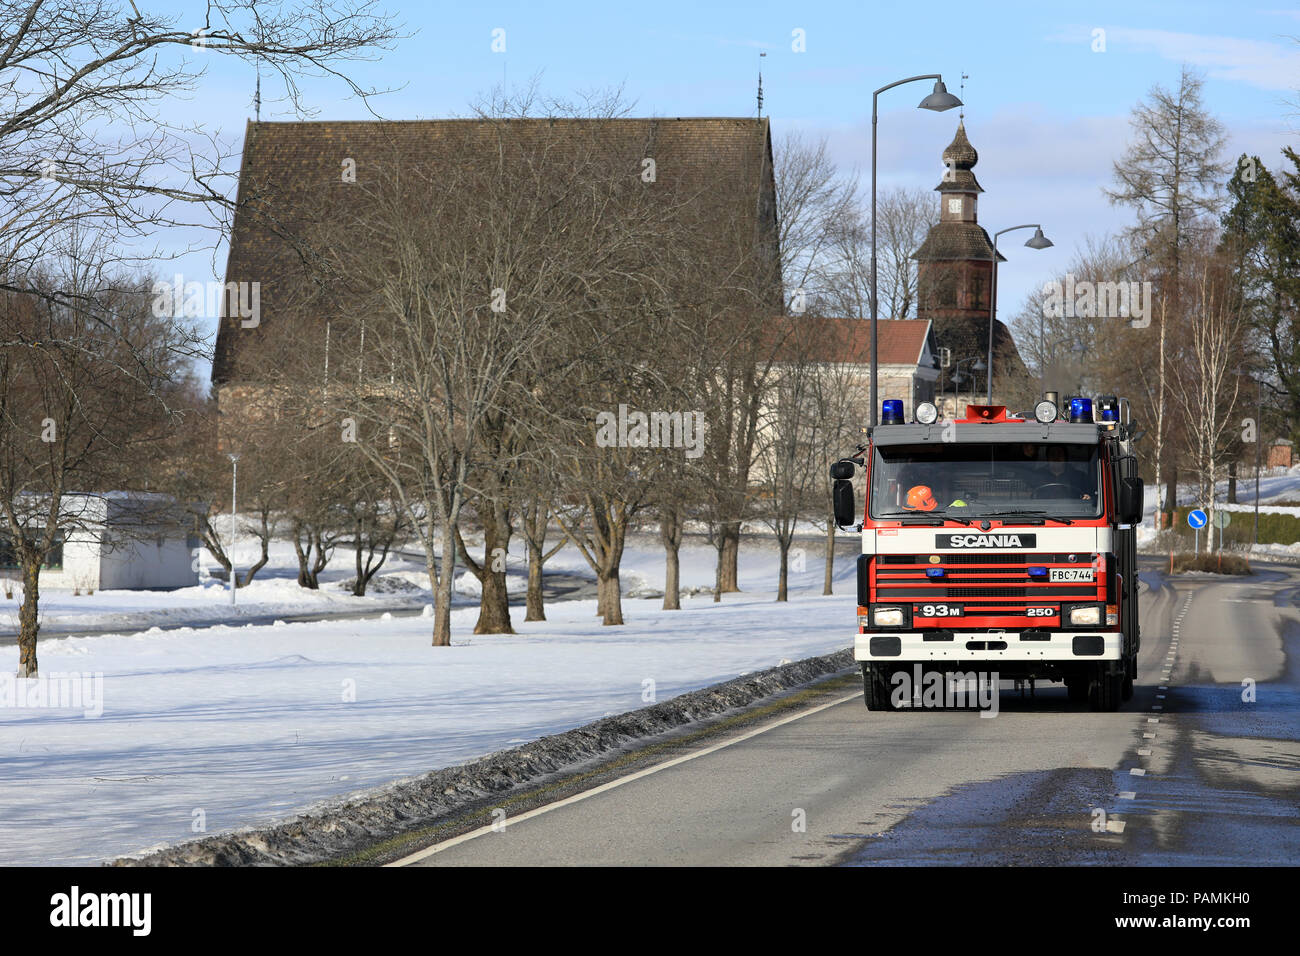 Scania 93M fire chariot roule sur la route dans le centre du village passé Pernio église médiévale sur l'arrière-plan. Pernio, Salo, Finlande - le 18 mars 2018. Banque D'Images